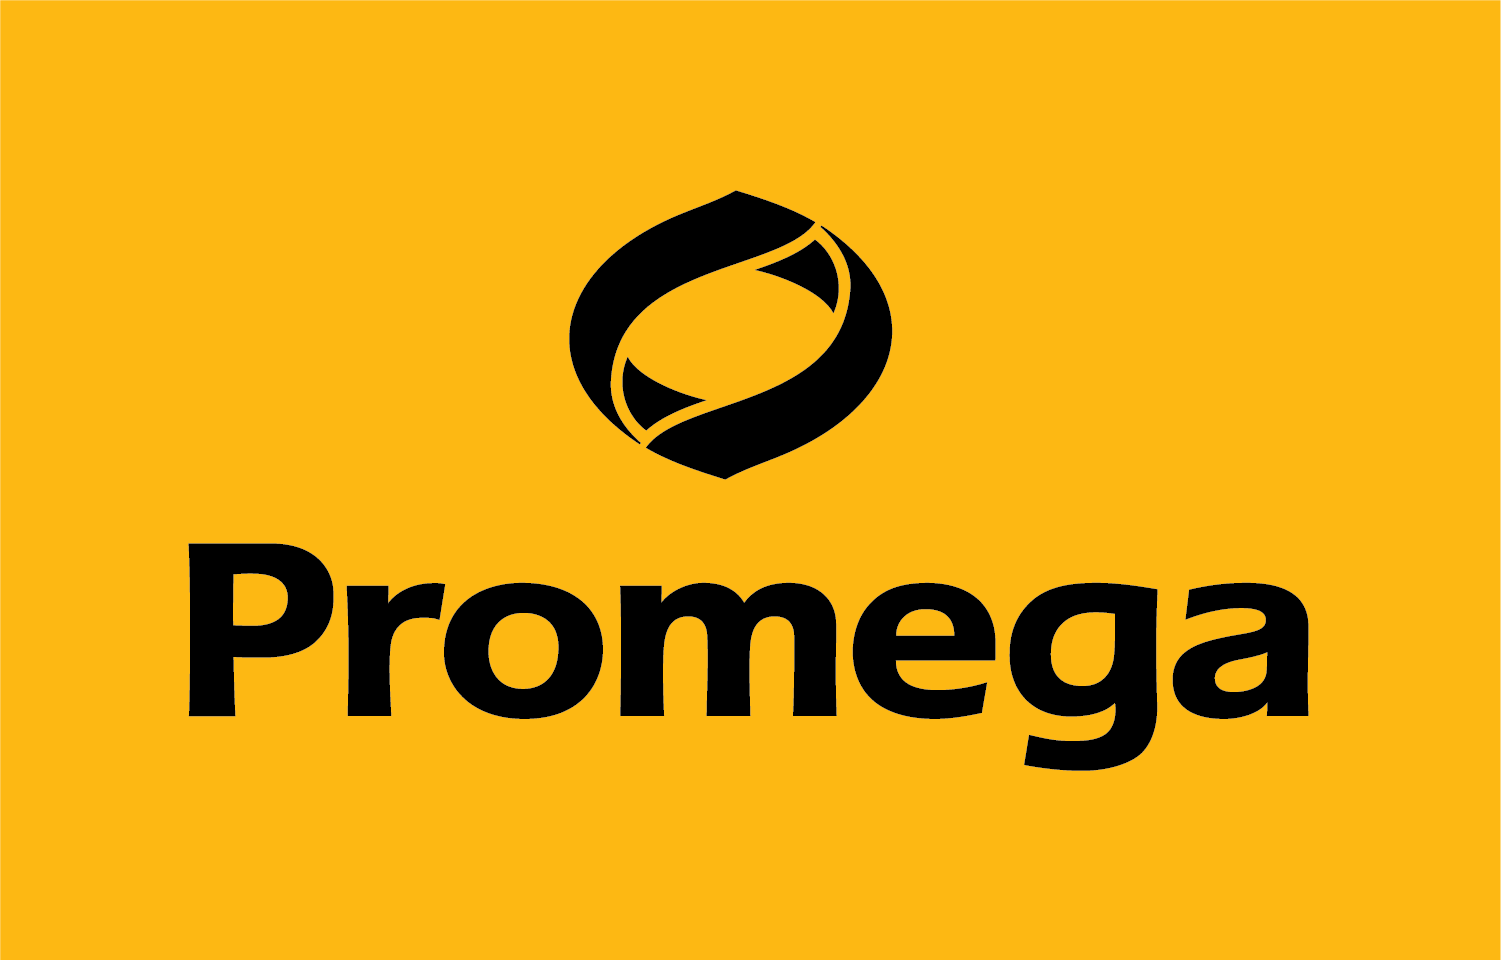 PromegaLogo_2017